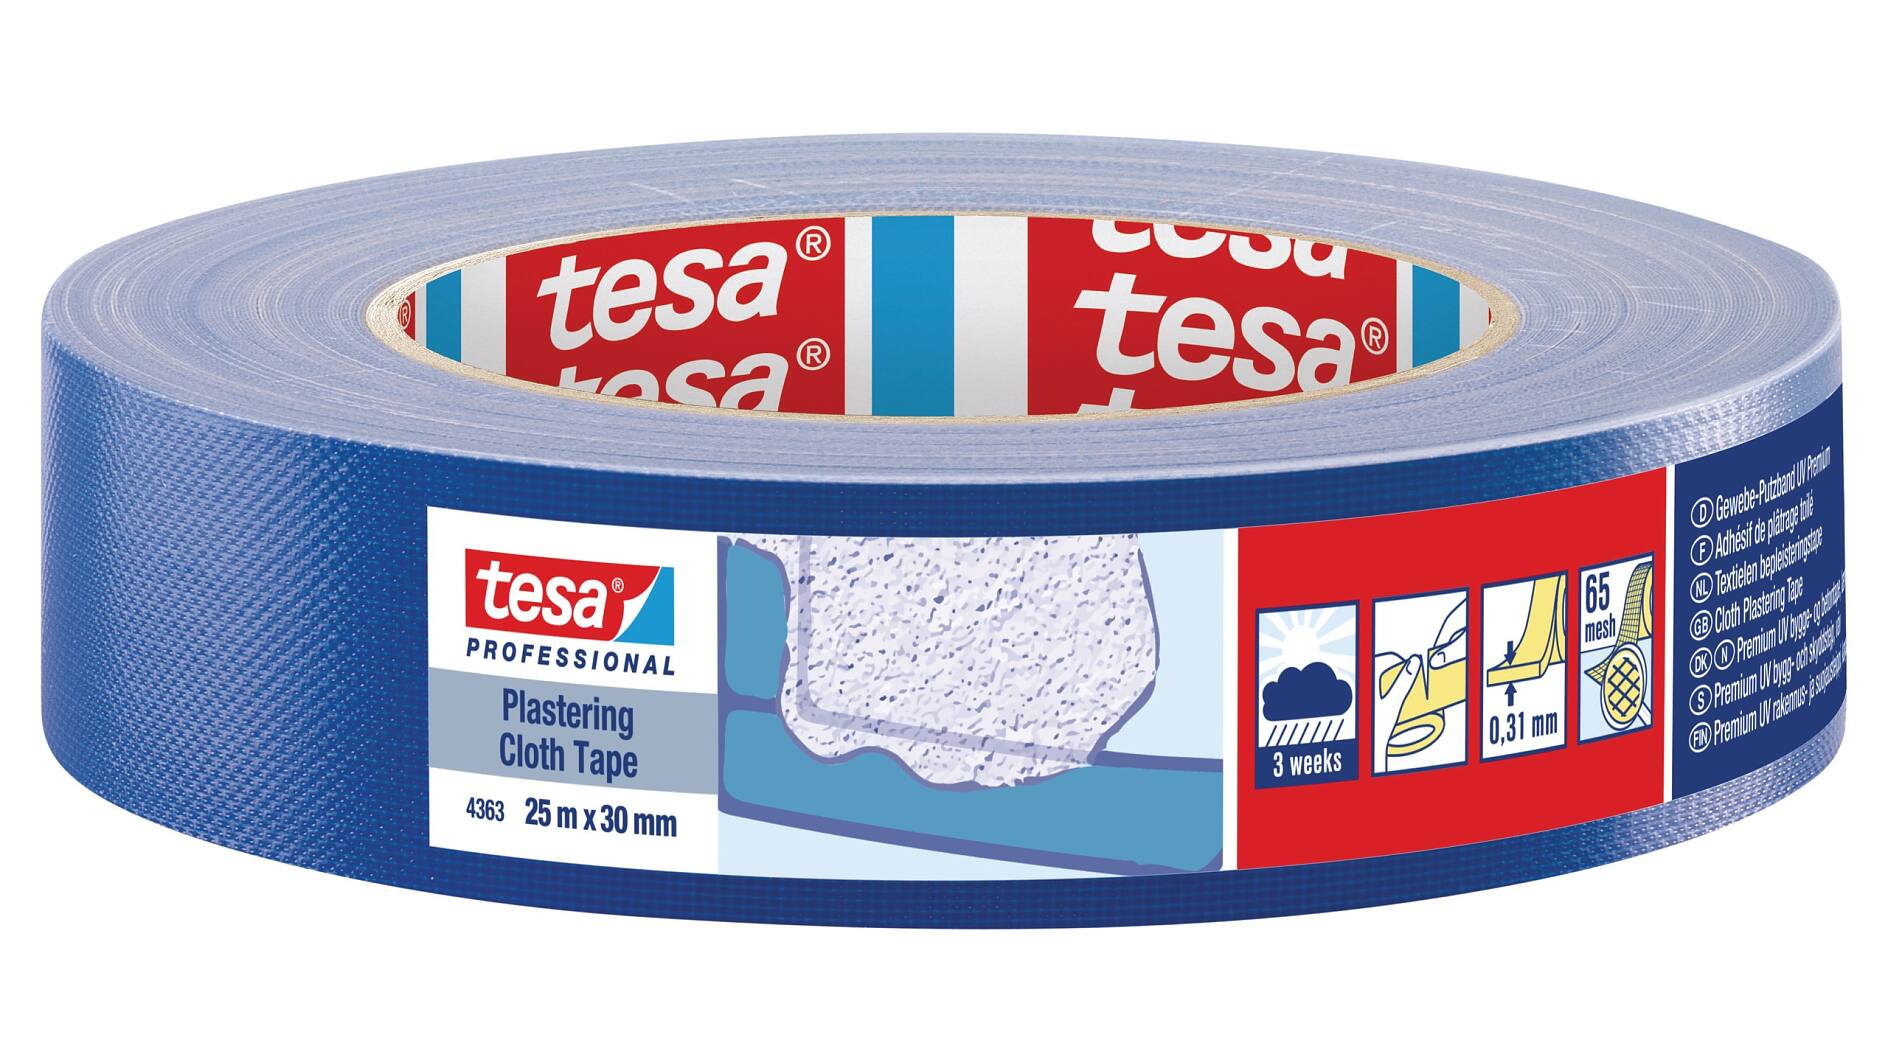 tesa® Professional 67001 sPVC Plastering Tape Embossed - tesa